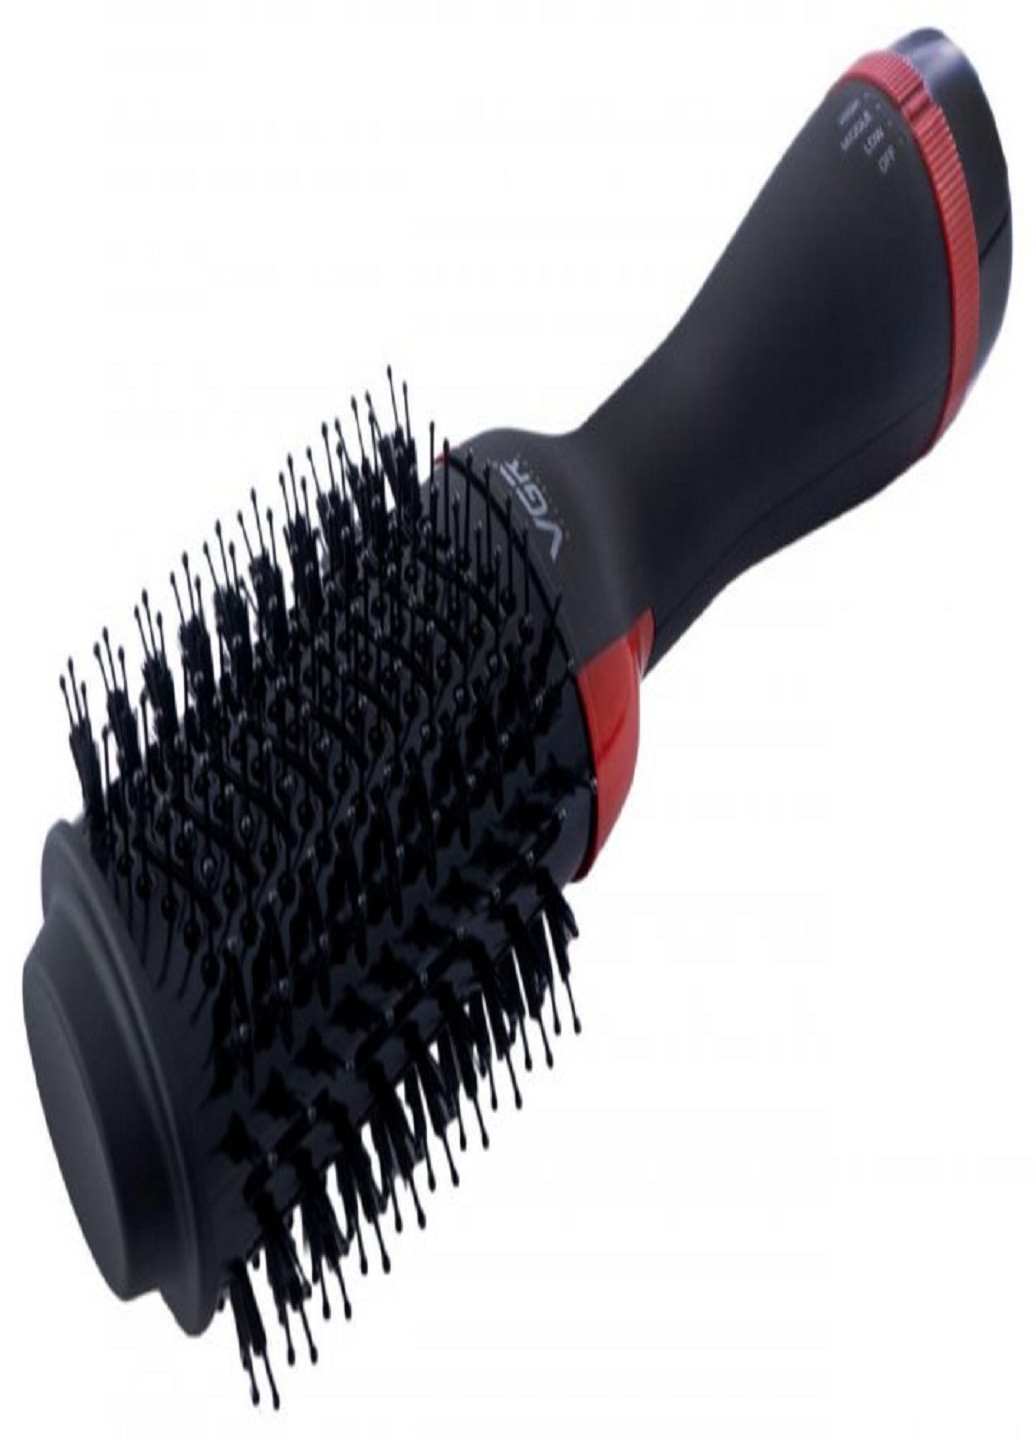 Фен-щітка для волосся V-416 мультистайлер з гребінцем 1000 Вт Чорний VGR (254110774)